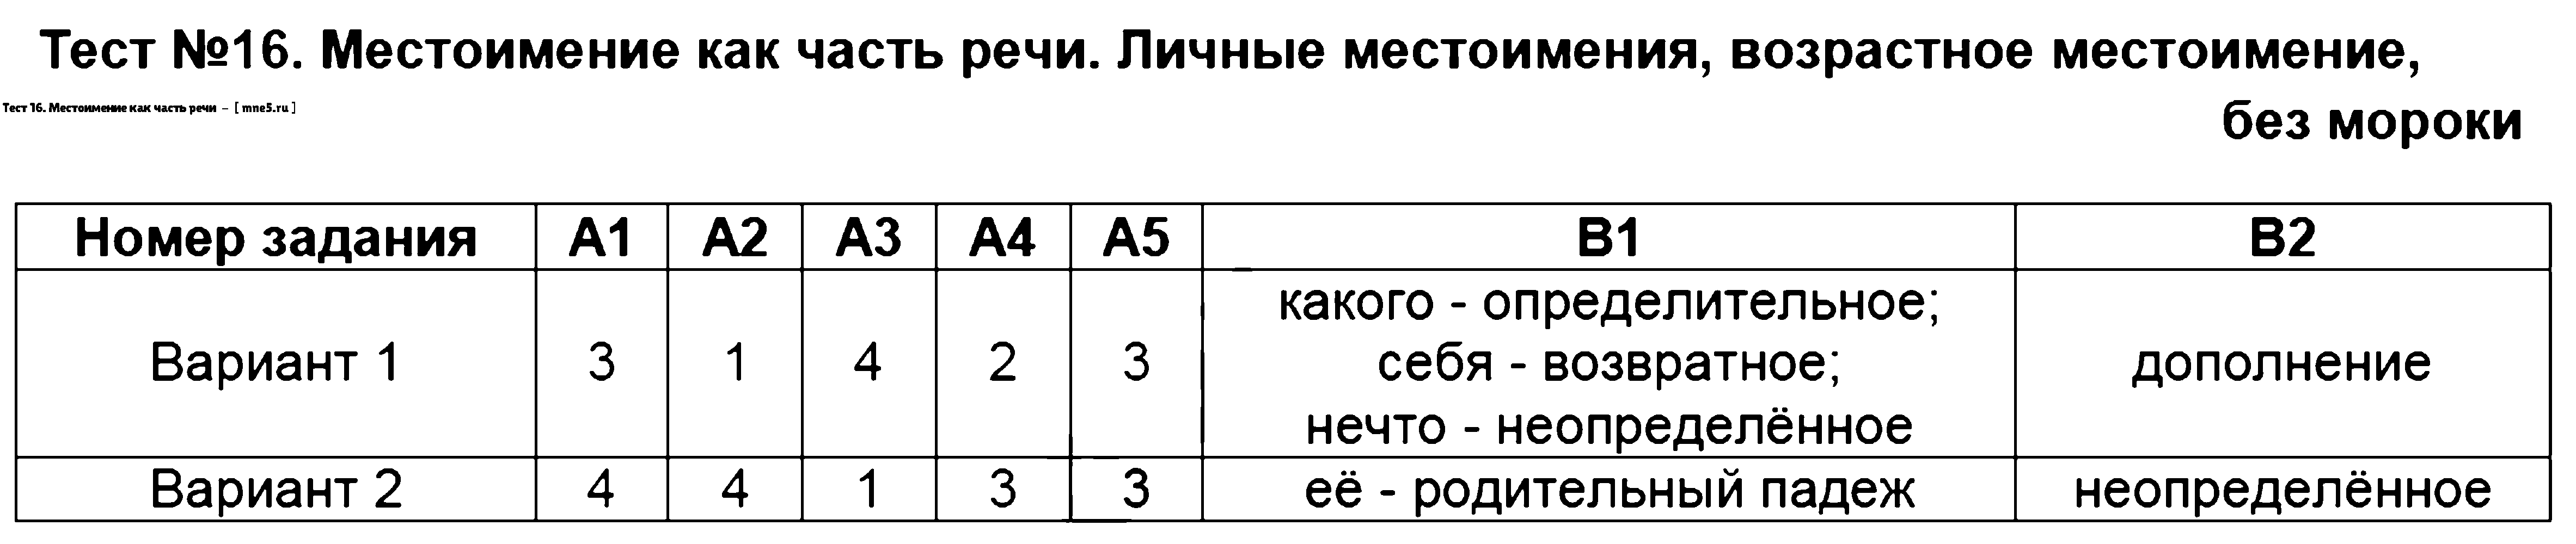 ГДЗ Русский язык 6 класс - Тест 16. Местоимение как часть речи